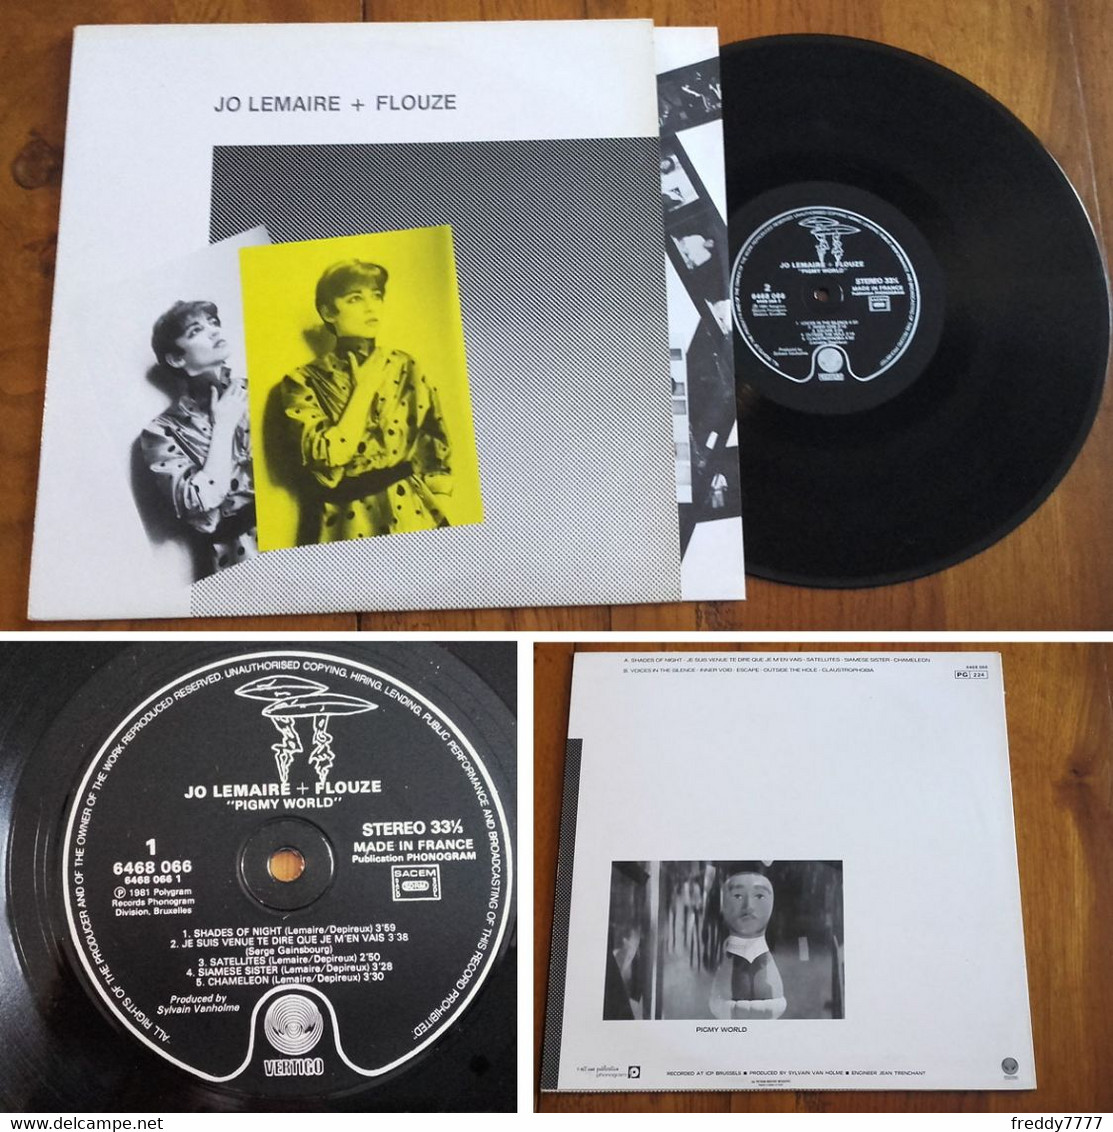 RARE French LP 33t RPM (12") JO LEMAIRE + FLOUZE (Serge Gainsbourg, 1981) - Collectors